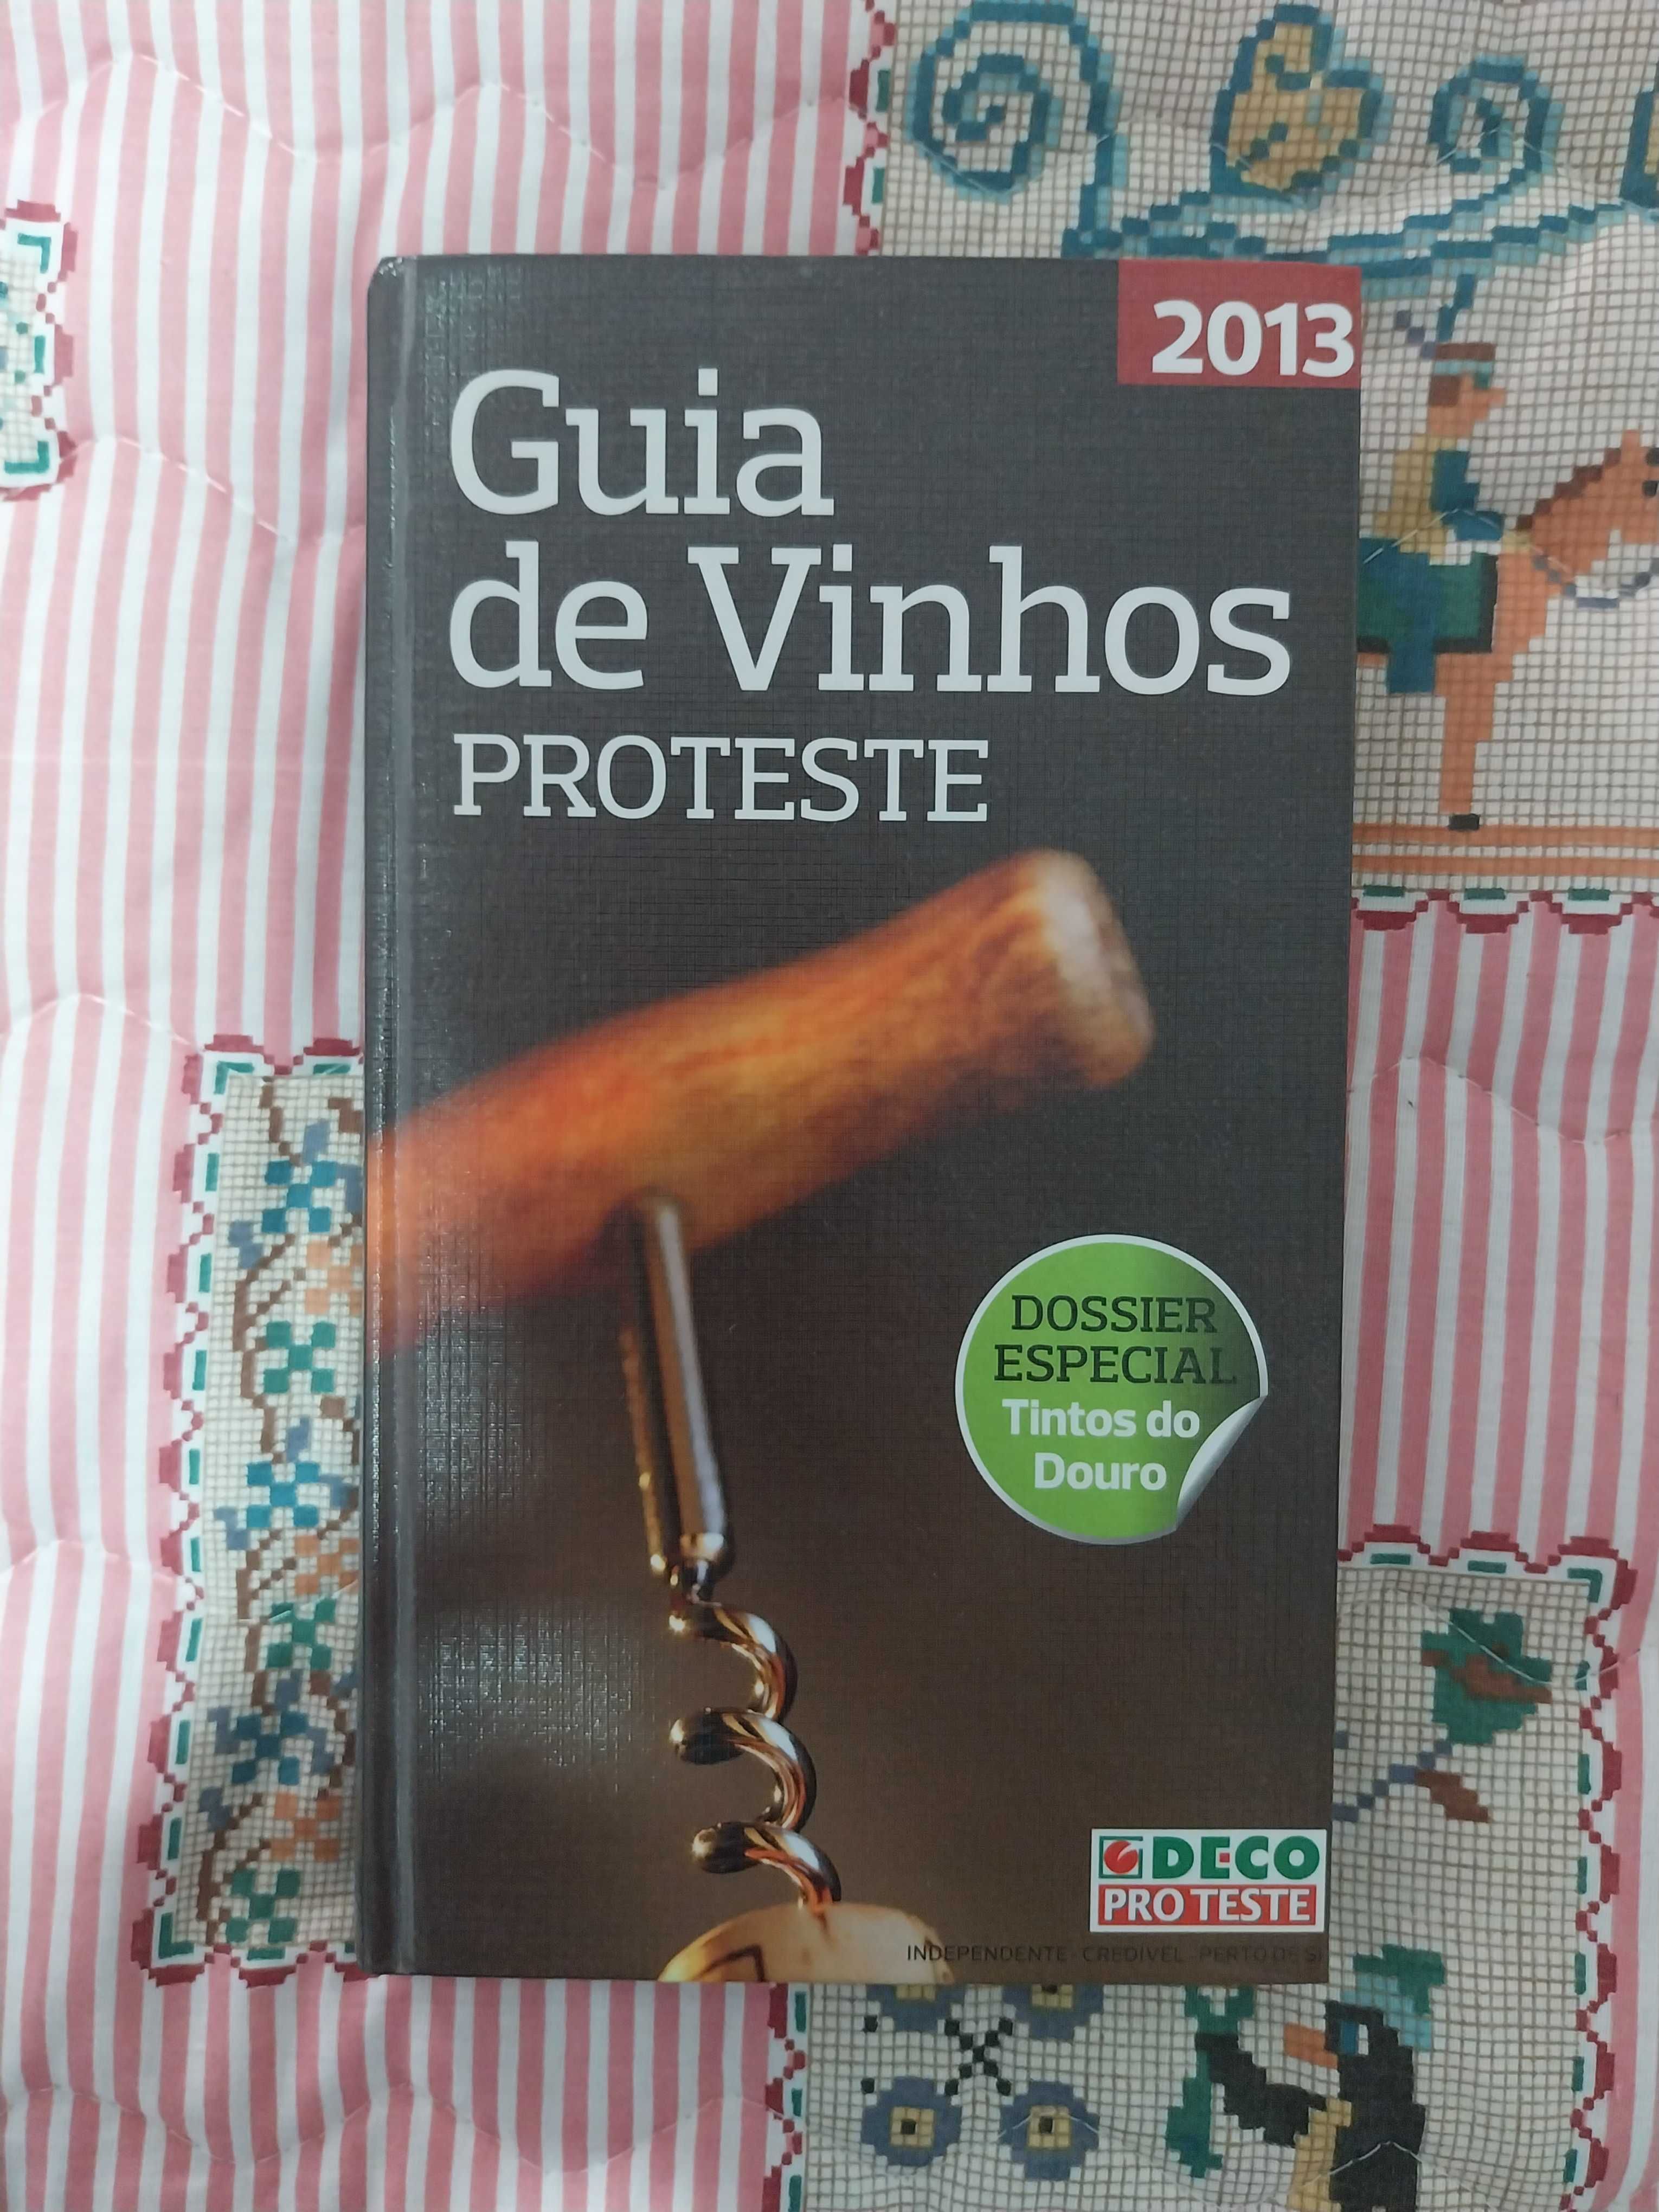 Livro – Guia de Vinhos 2013 (Proteste)